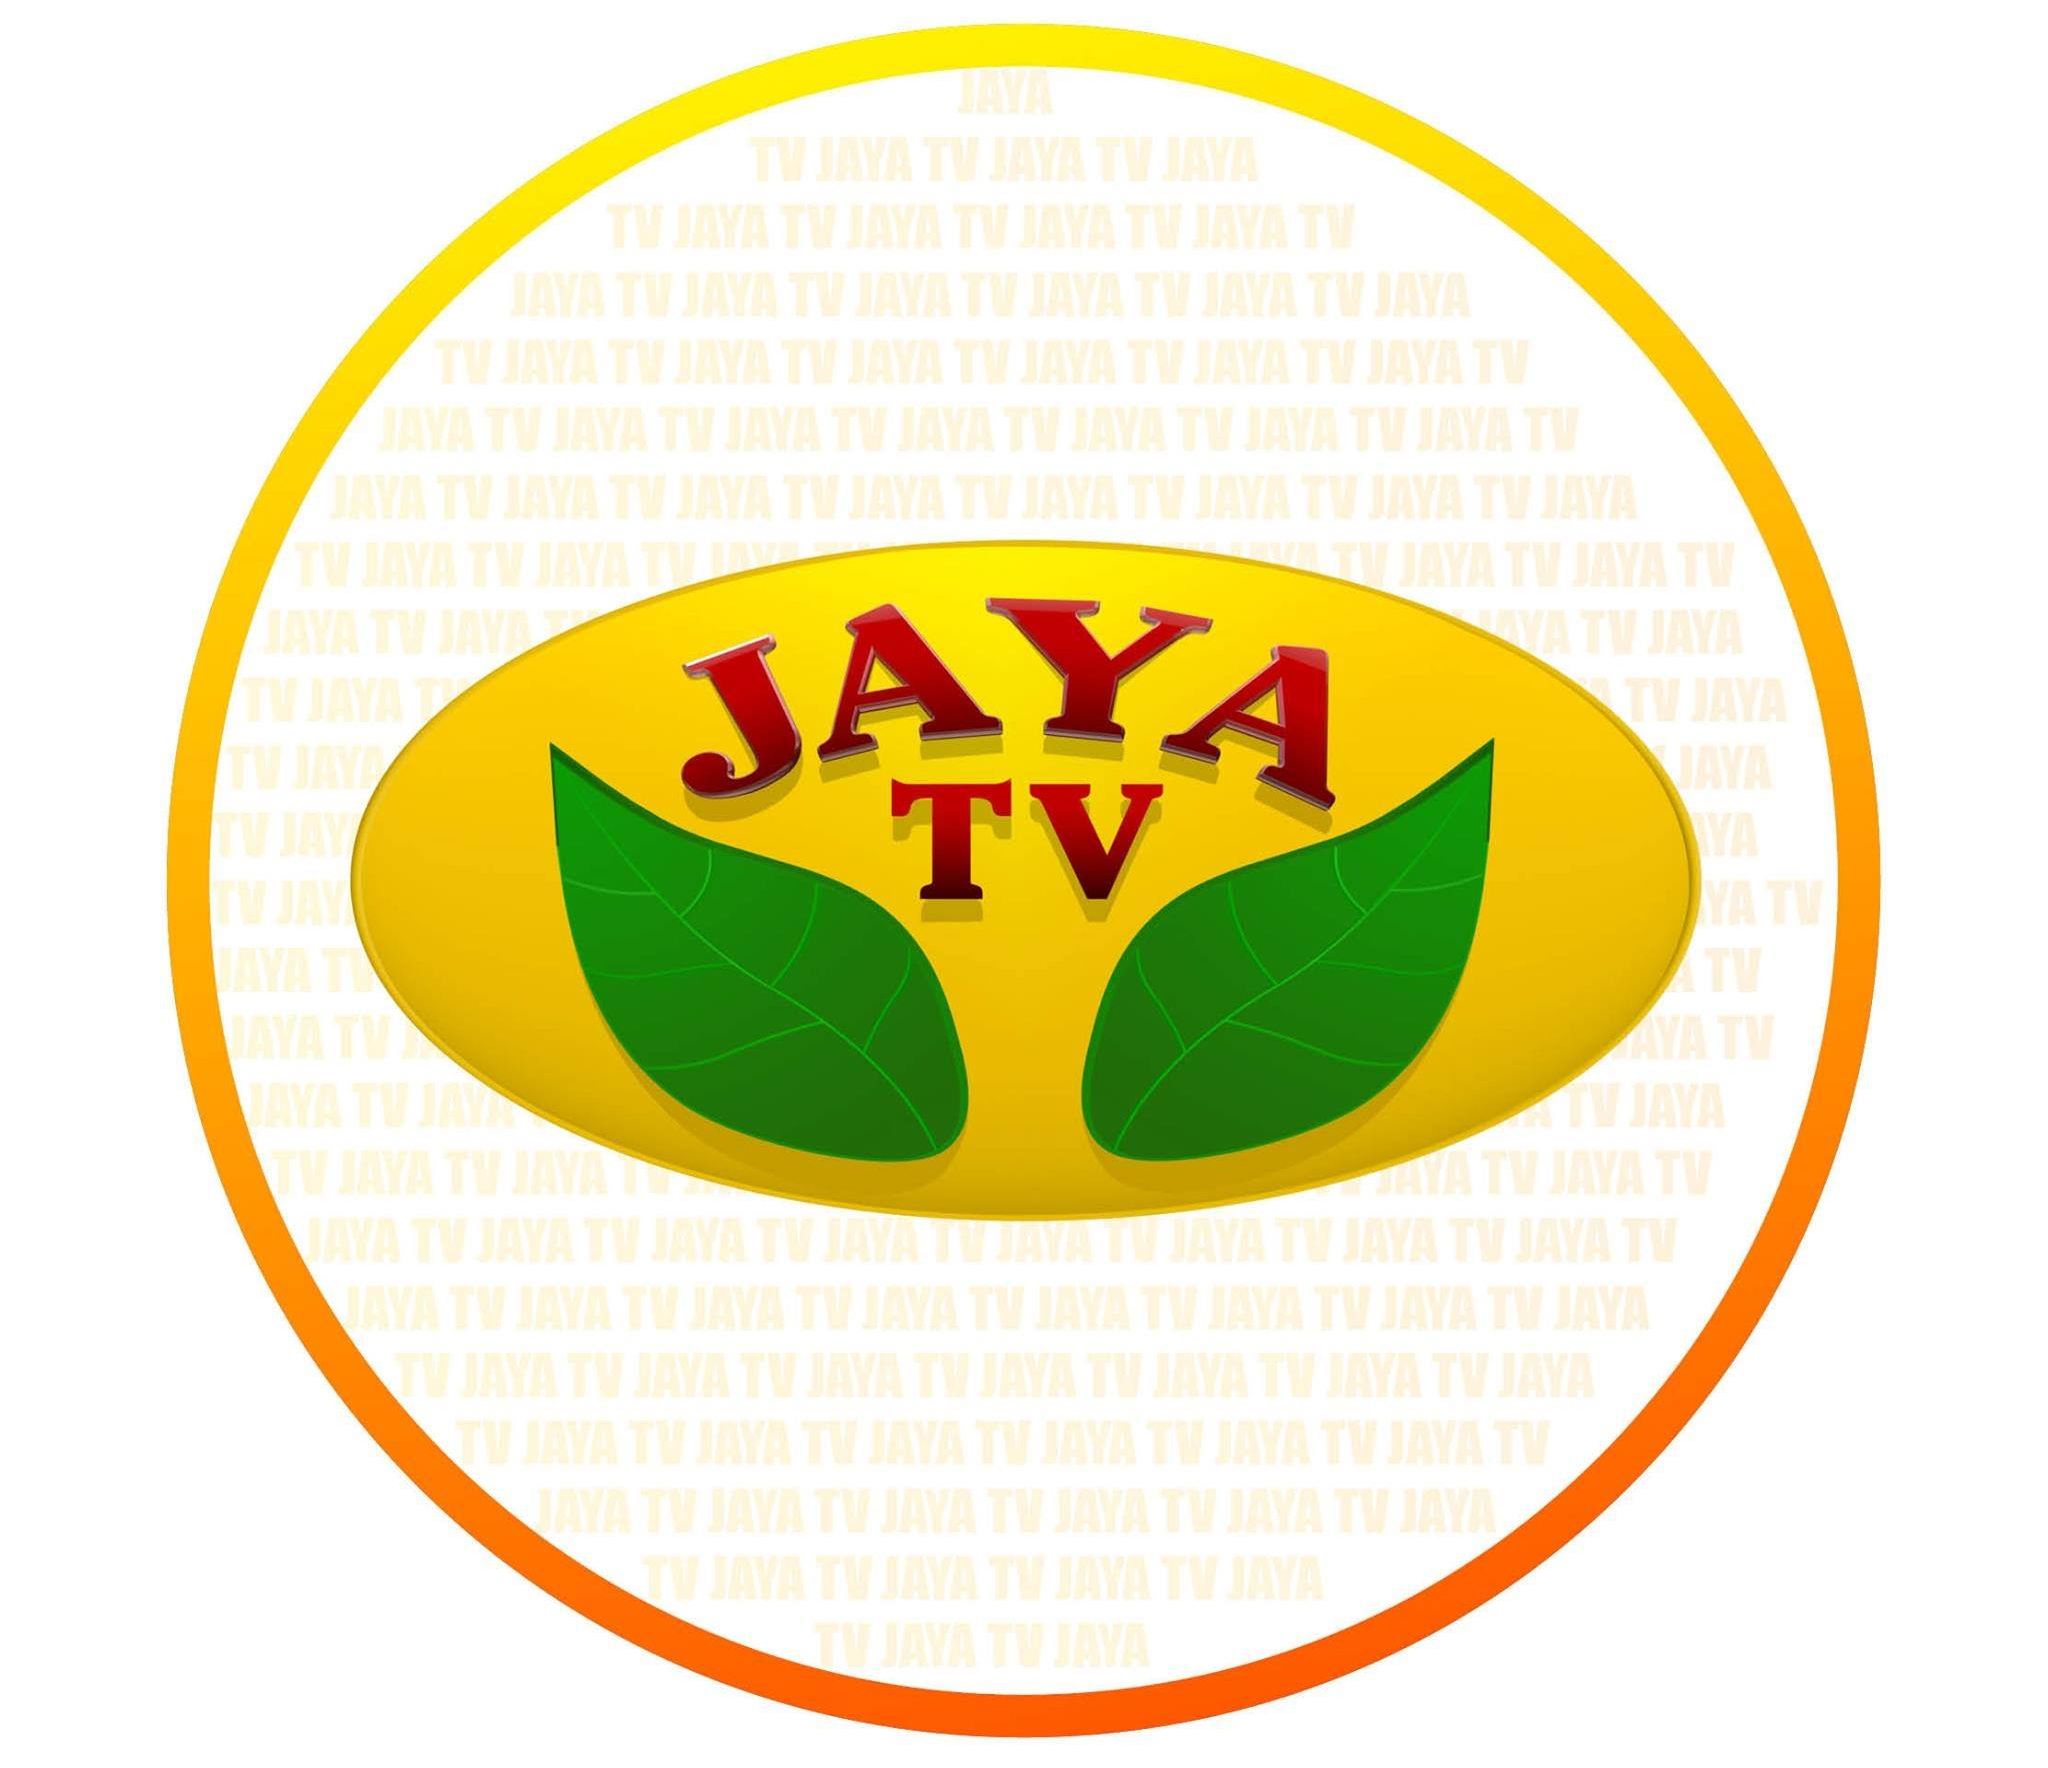 Jaya TV Festival Specials